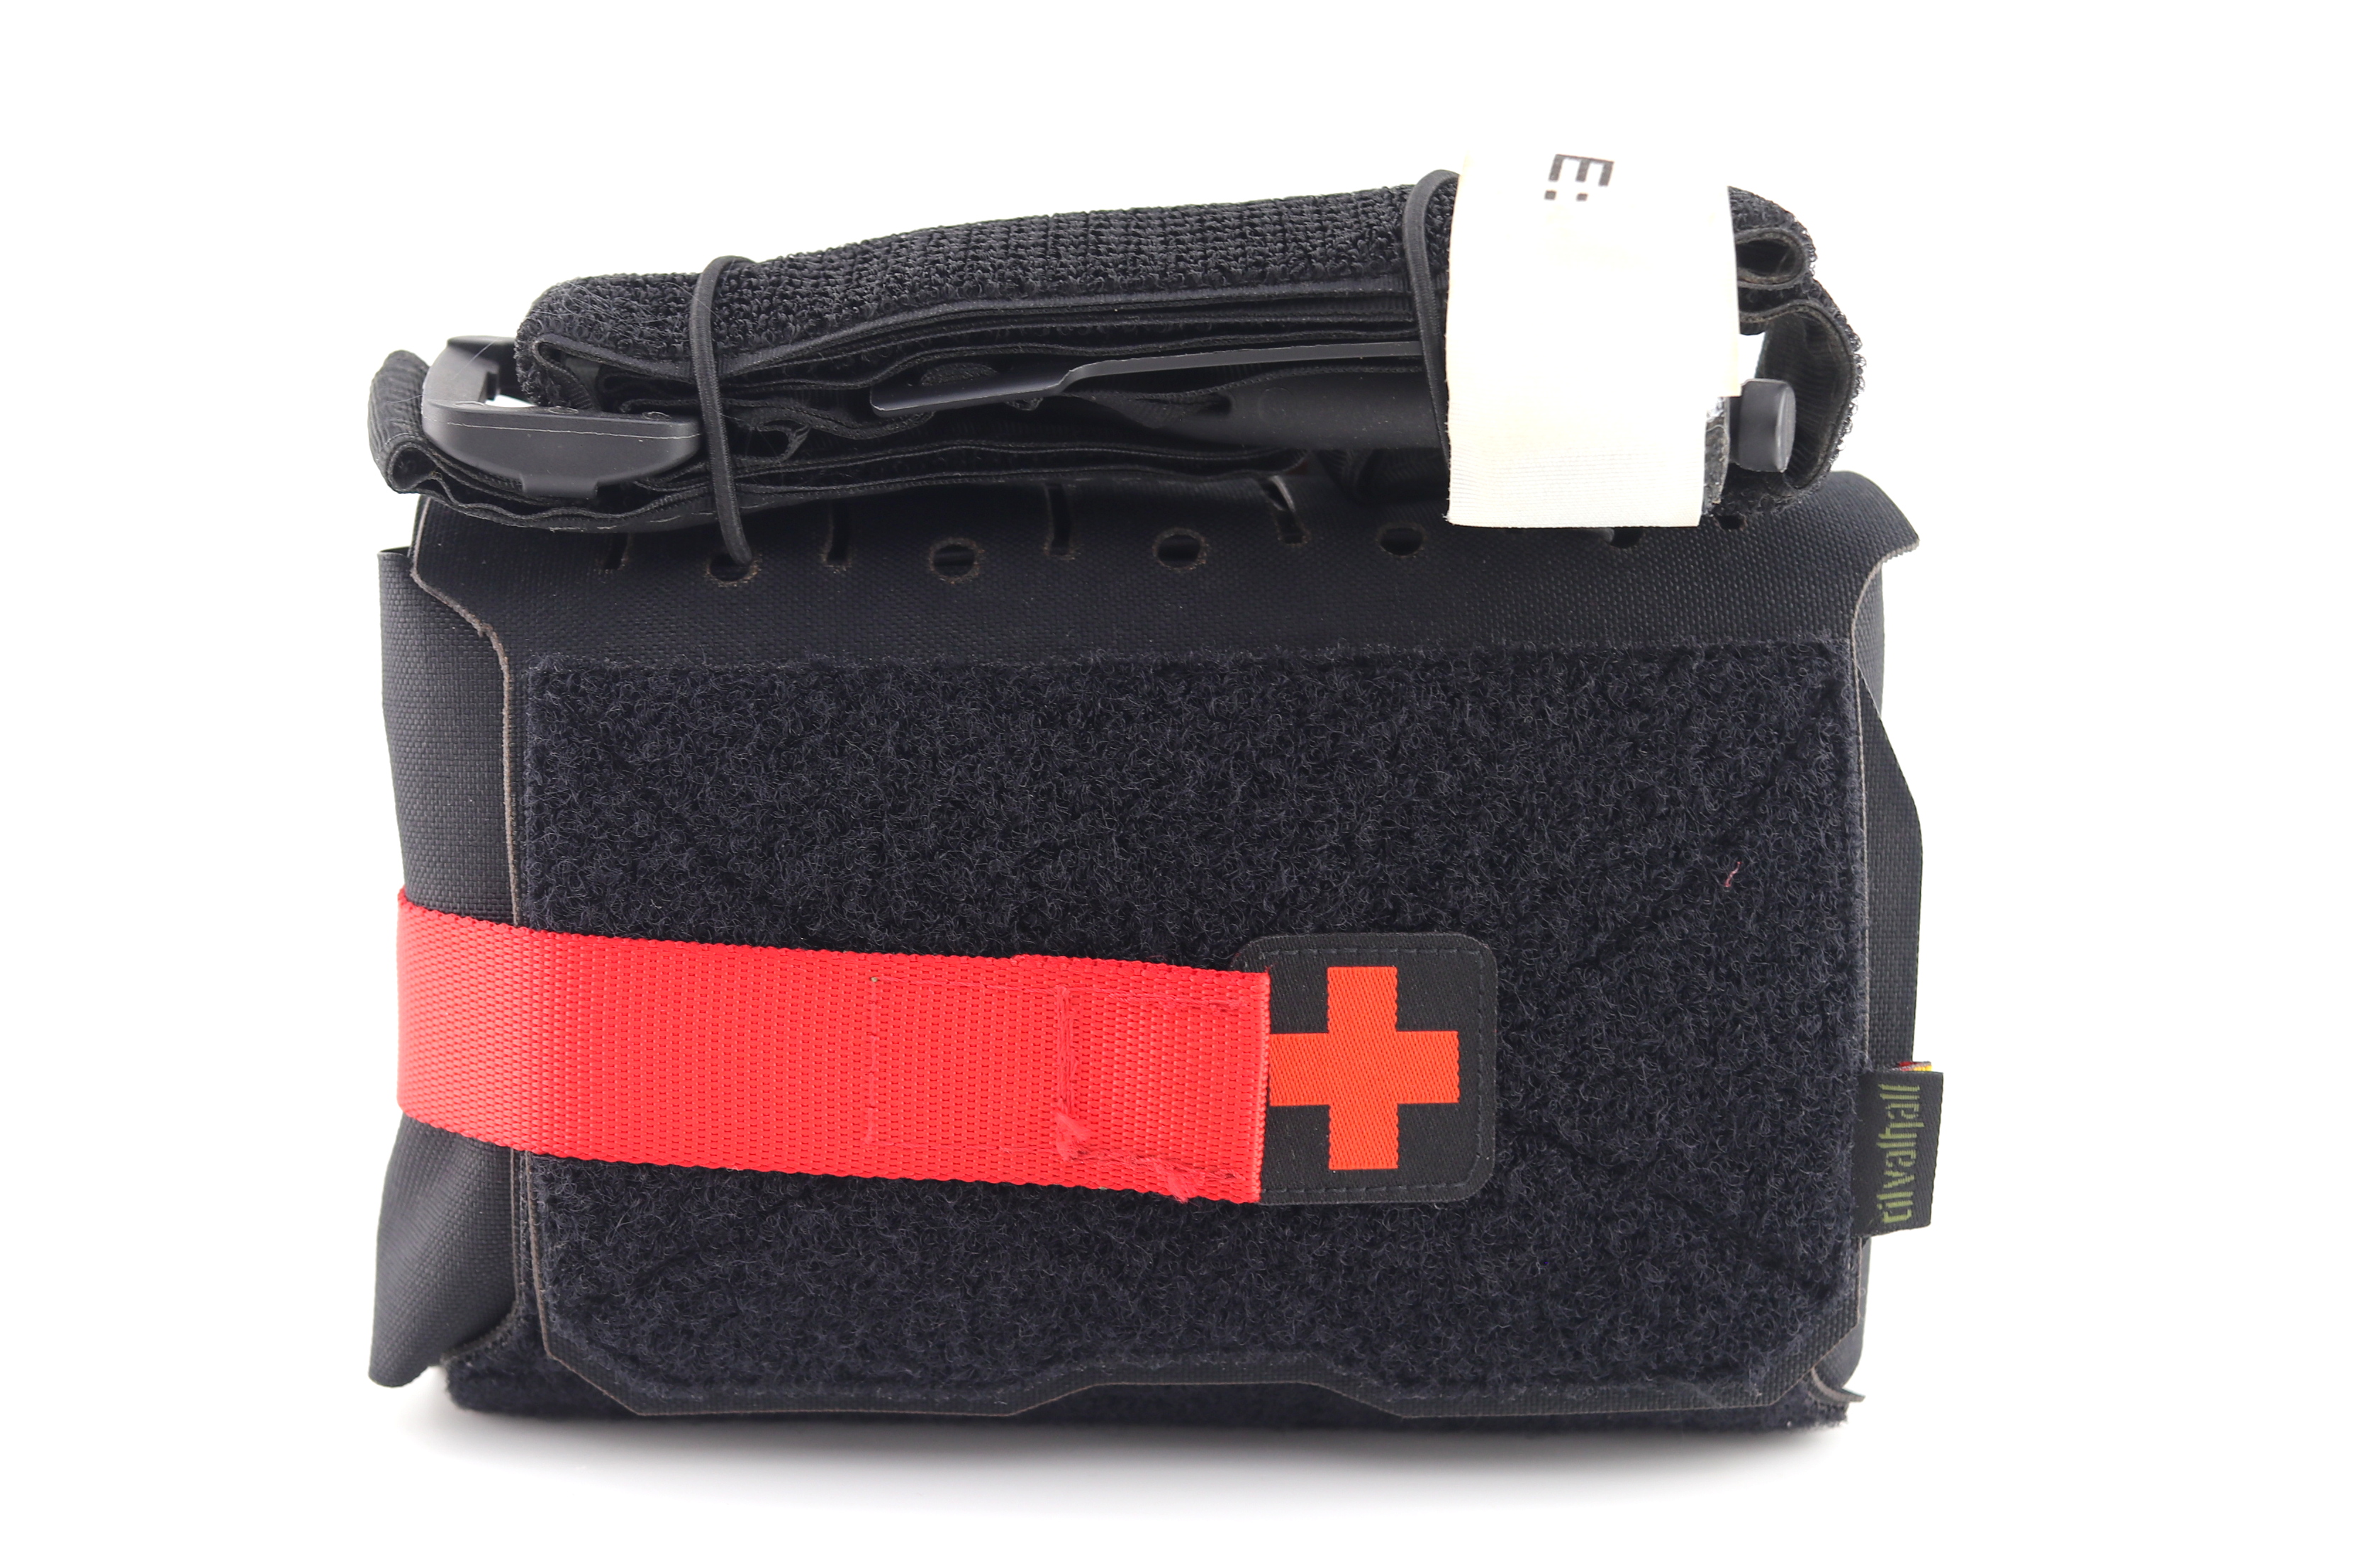  Erste-Hilfe-Tasche  - IFAK M, schwarz